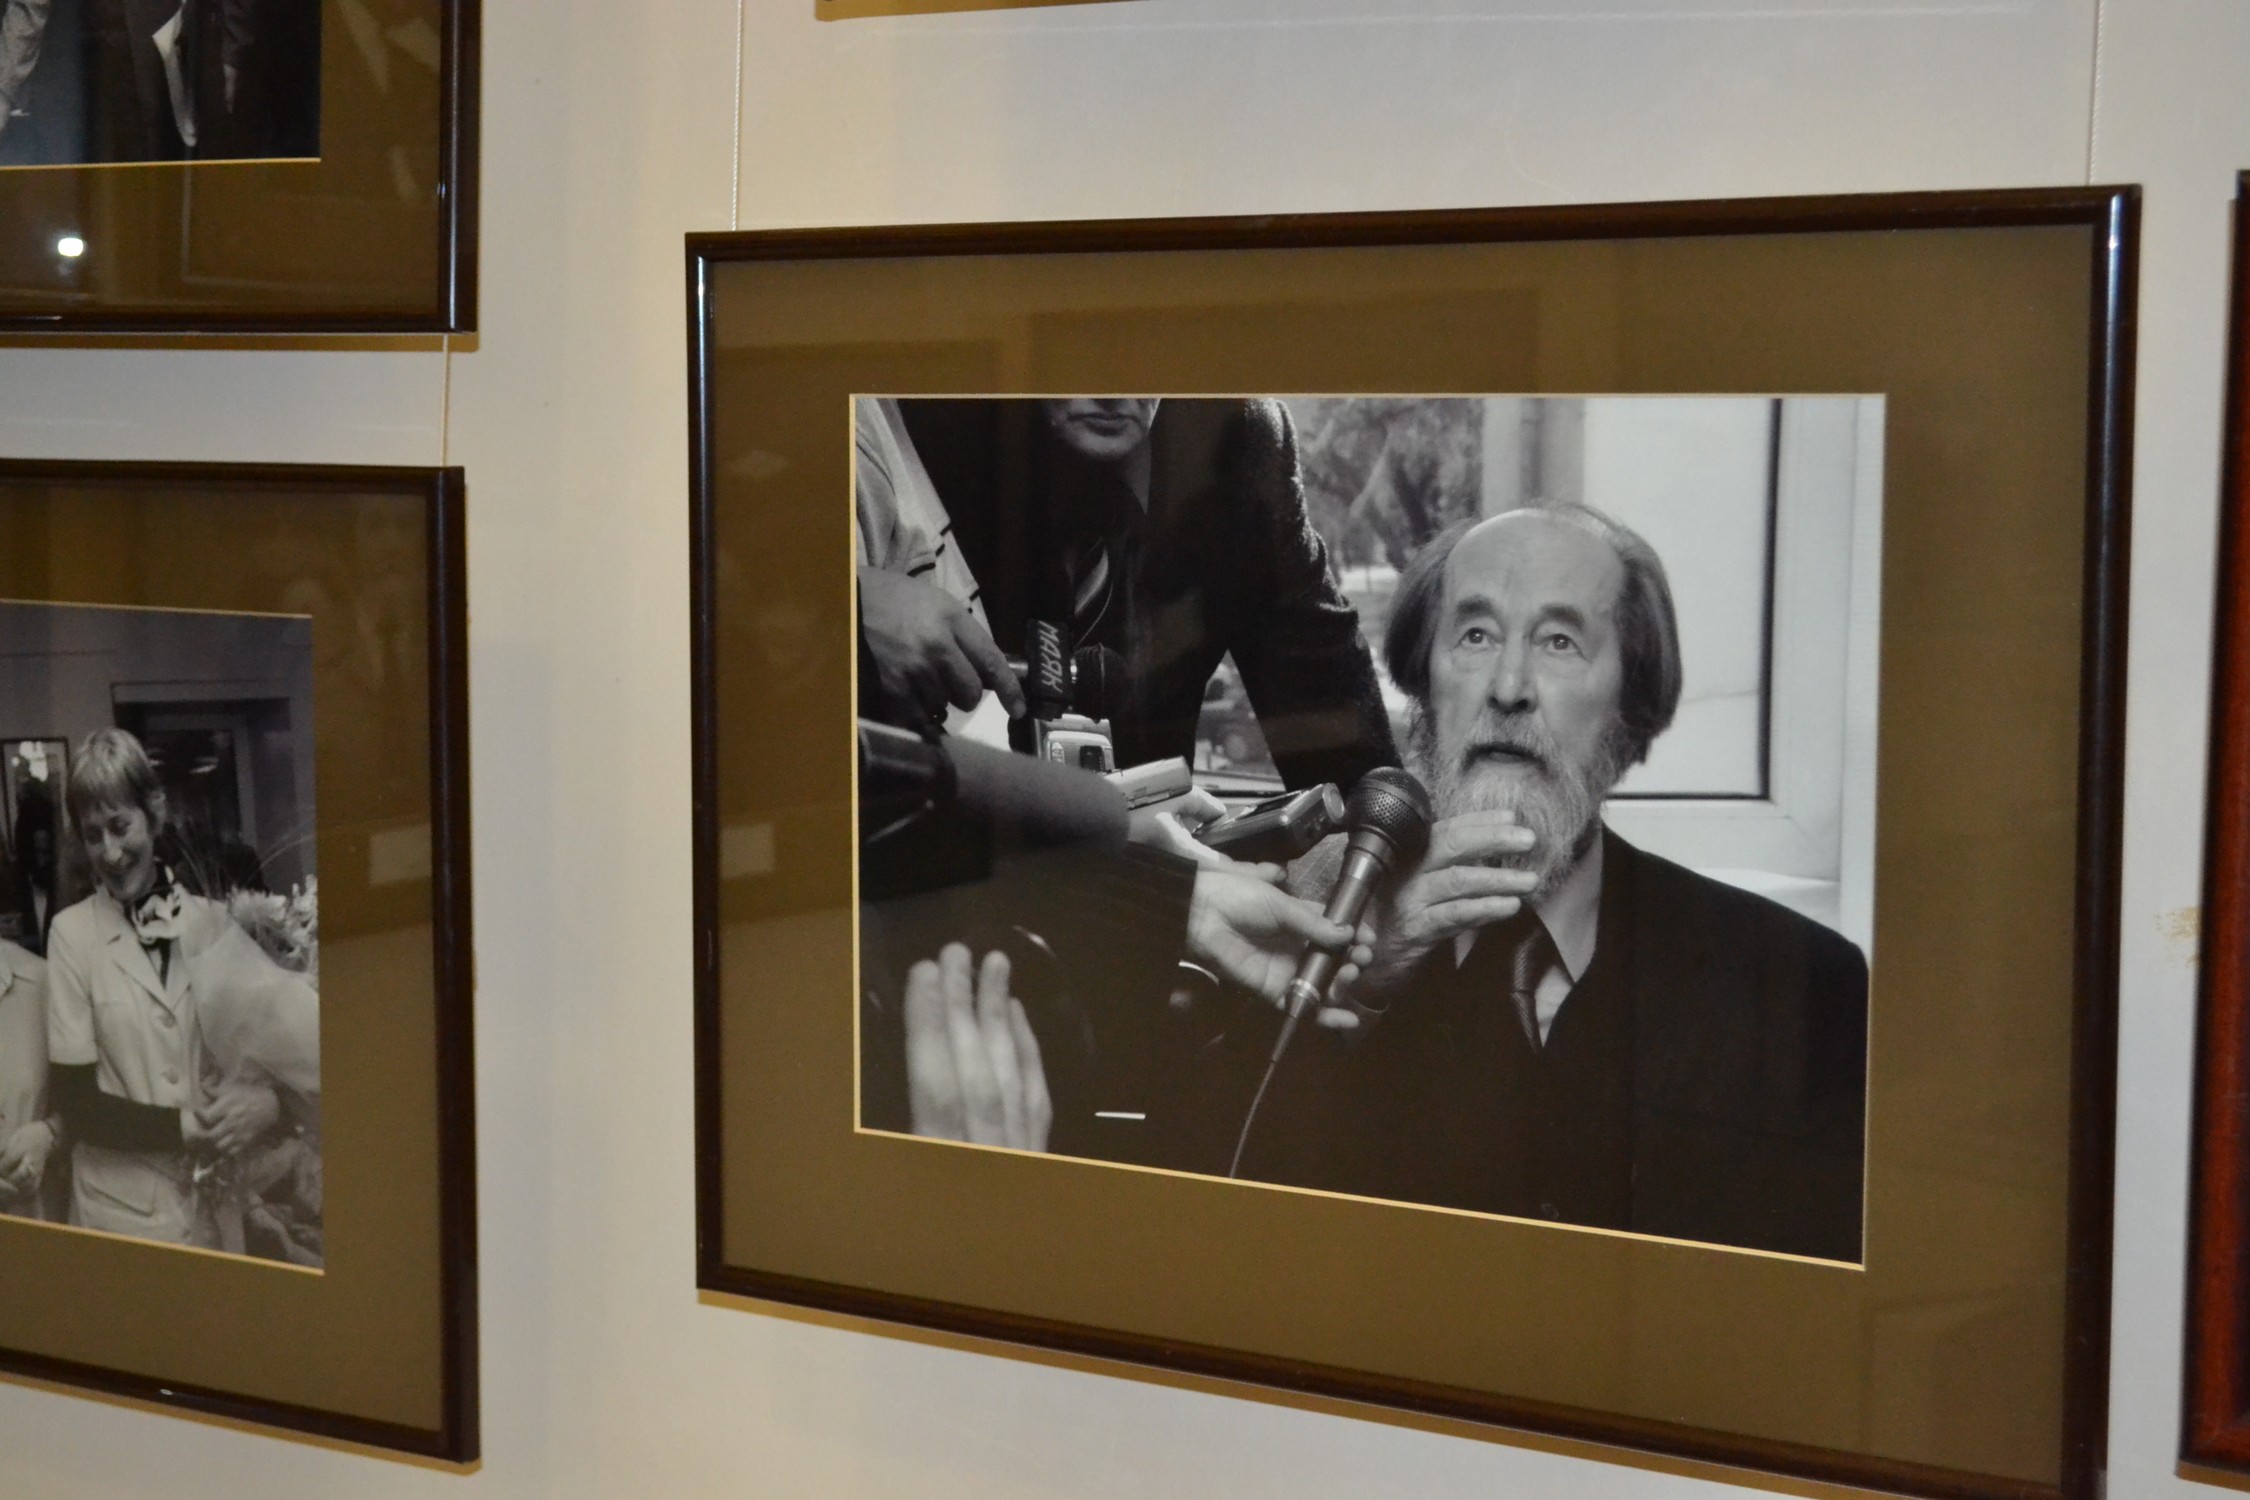 Выставка к 100-летнему юбилею А.И. Солженицына